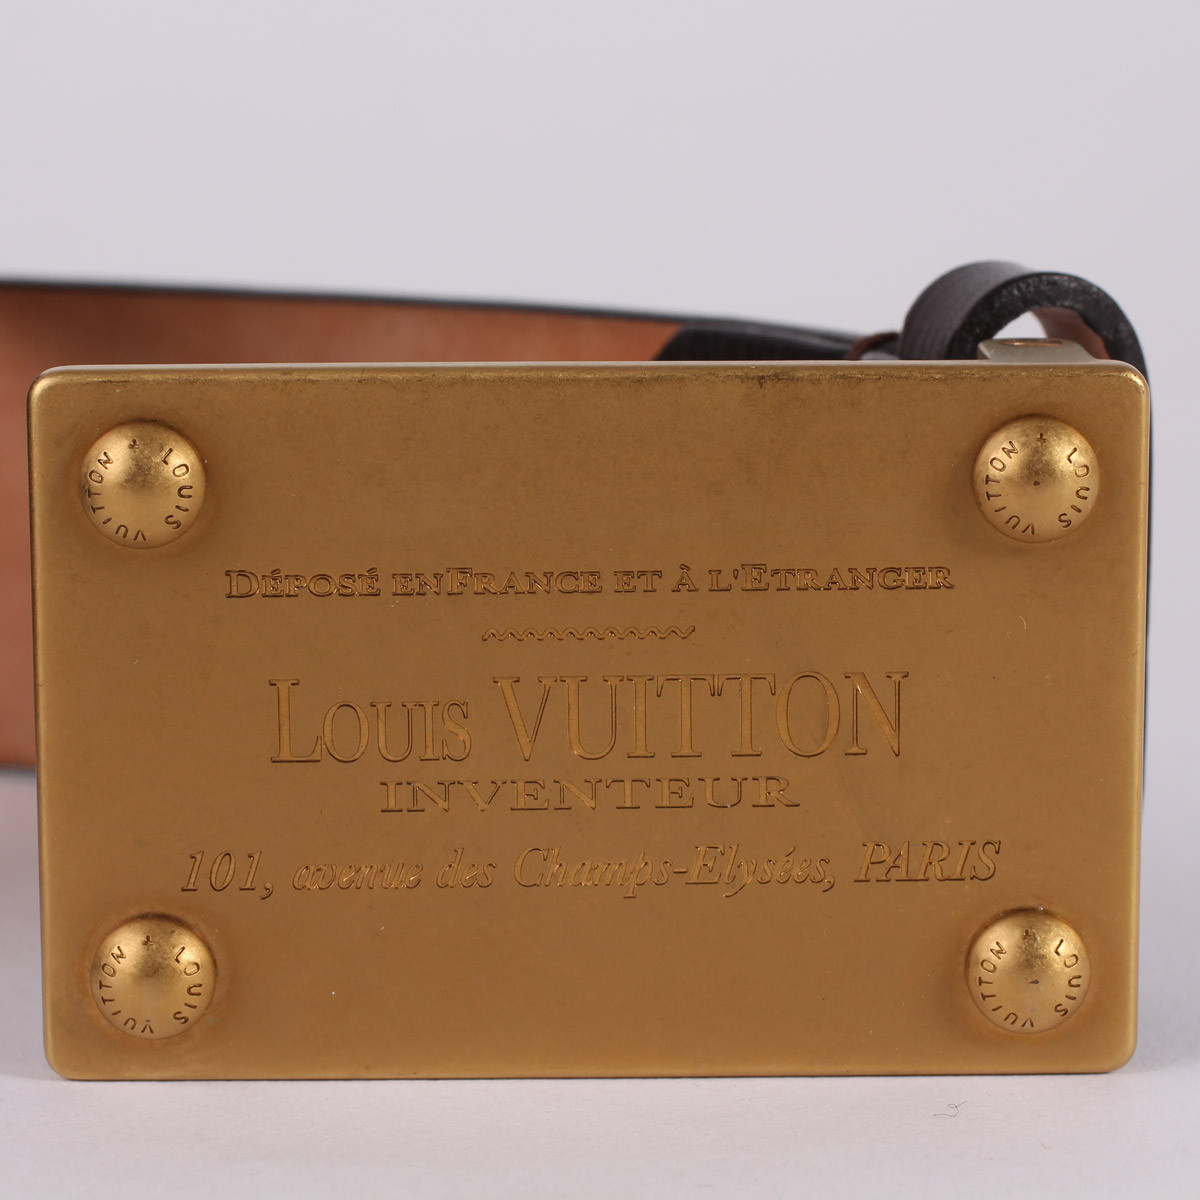 Ceinture LV Inventeur occasion Louis Vuitton